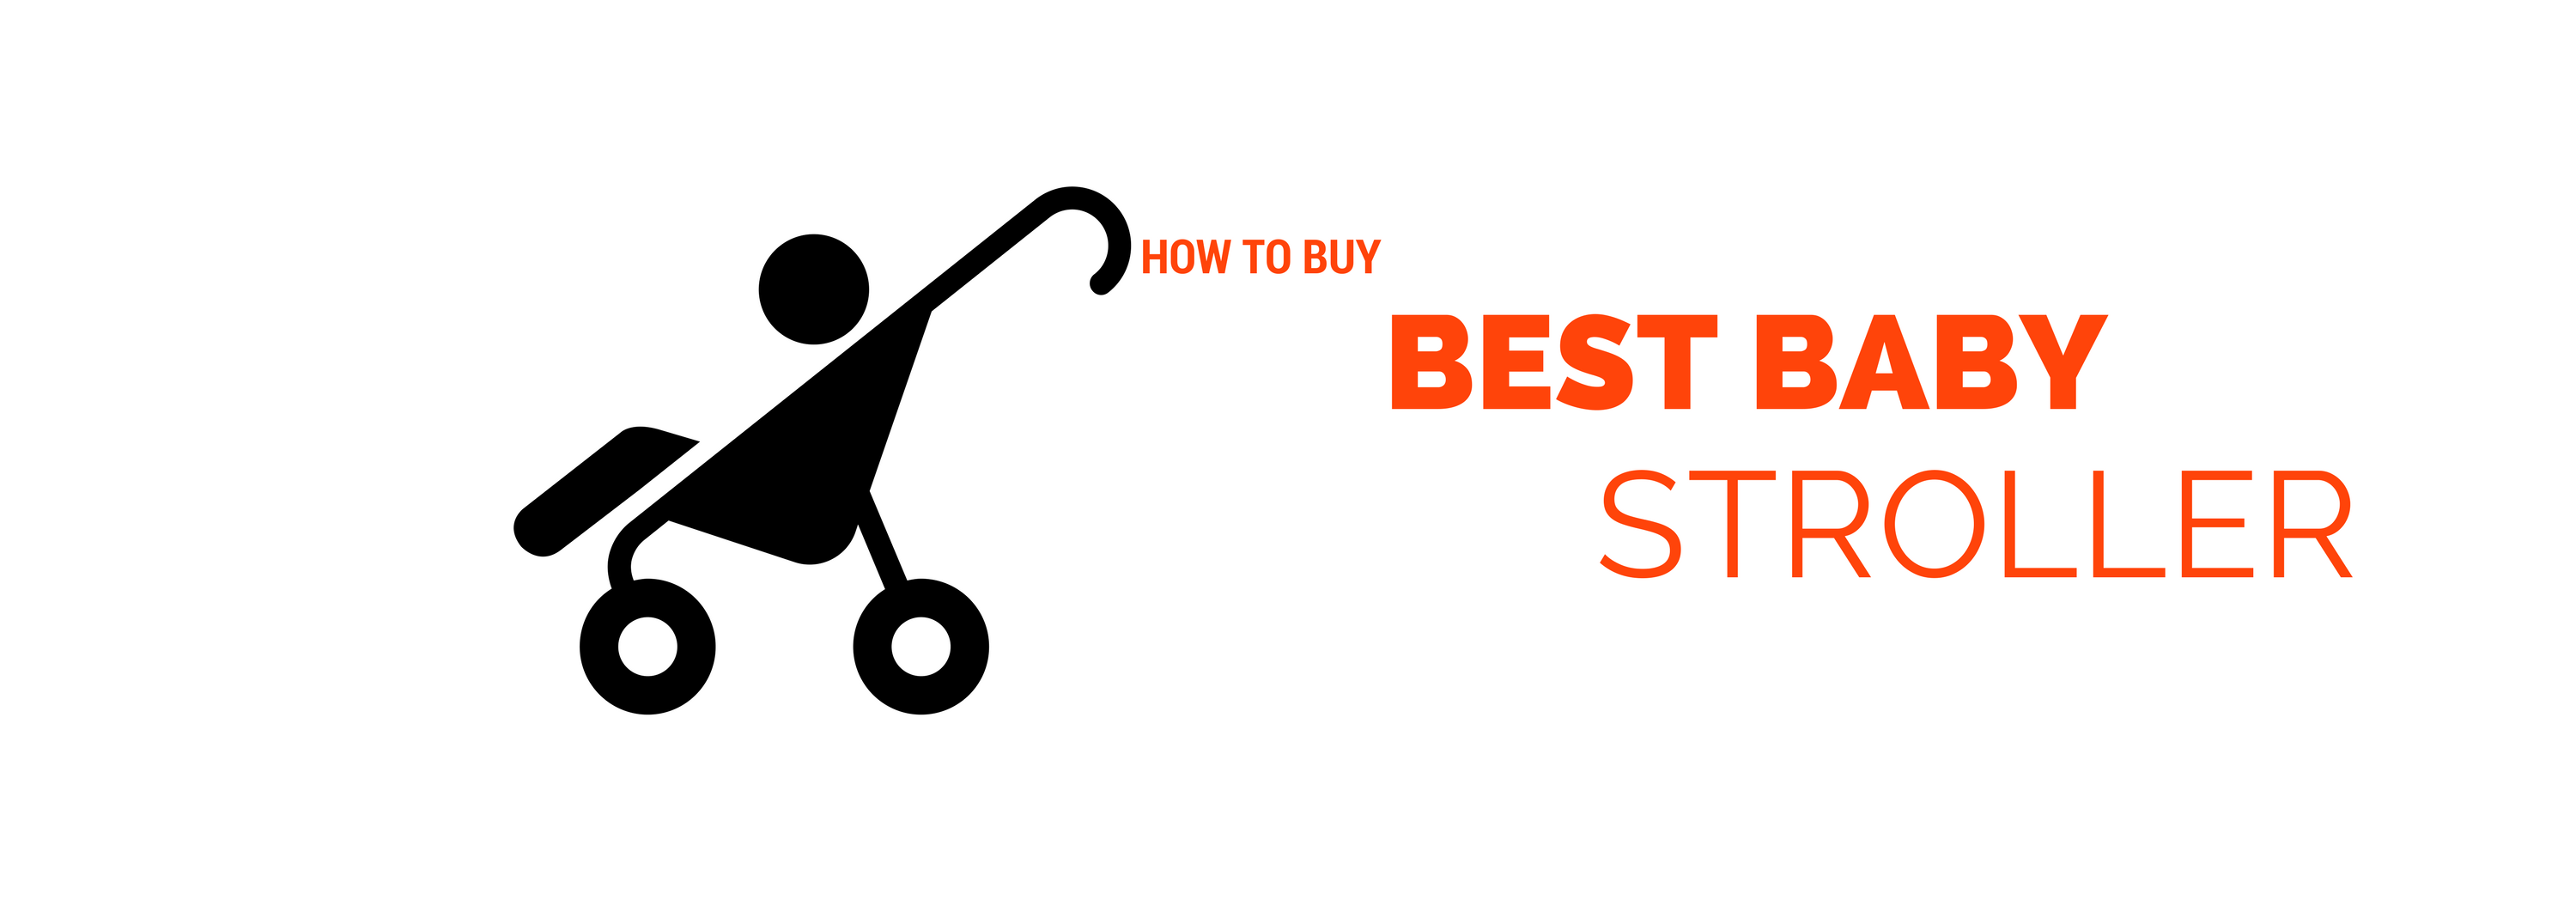 How To Buy Best Baby Stroller